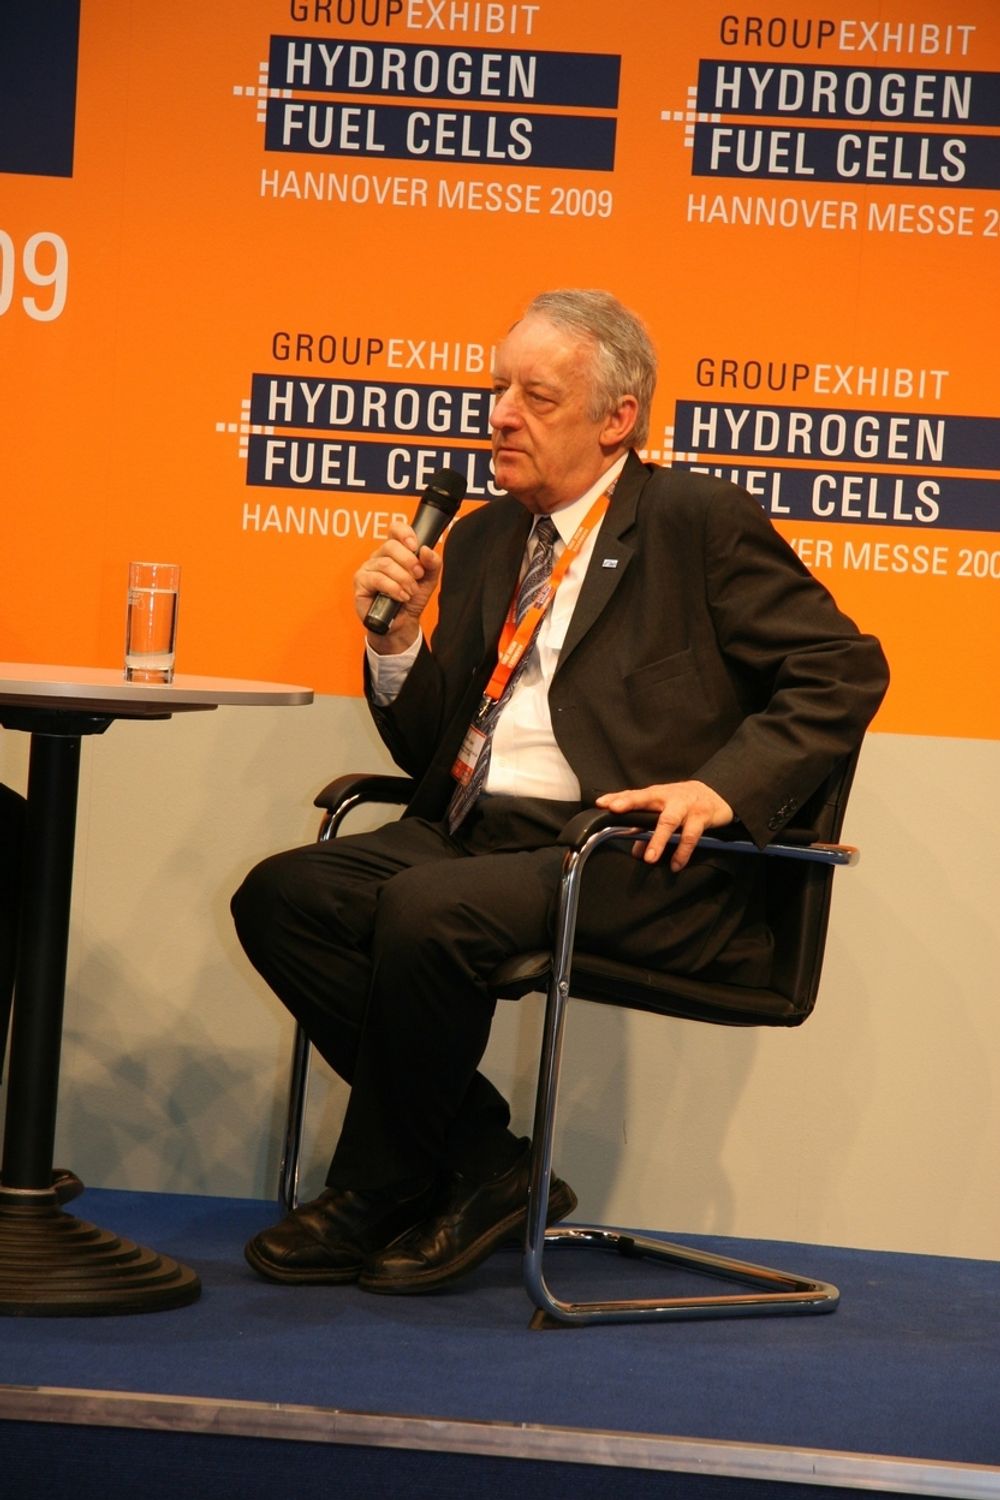 STERK I TROEN: Dr. Johannes Töpler har jobbet med hydrogen i et langt liv, blant annet som forsker hos Daimler Benz. Som styrelder i det tyske hydrogen- og brenselcelleforbundet ser han at det er i ferd med å ta av.